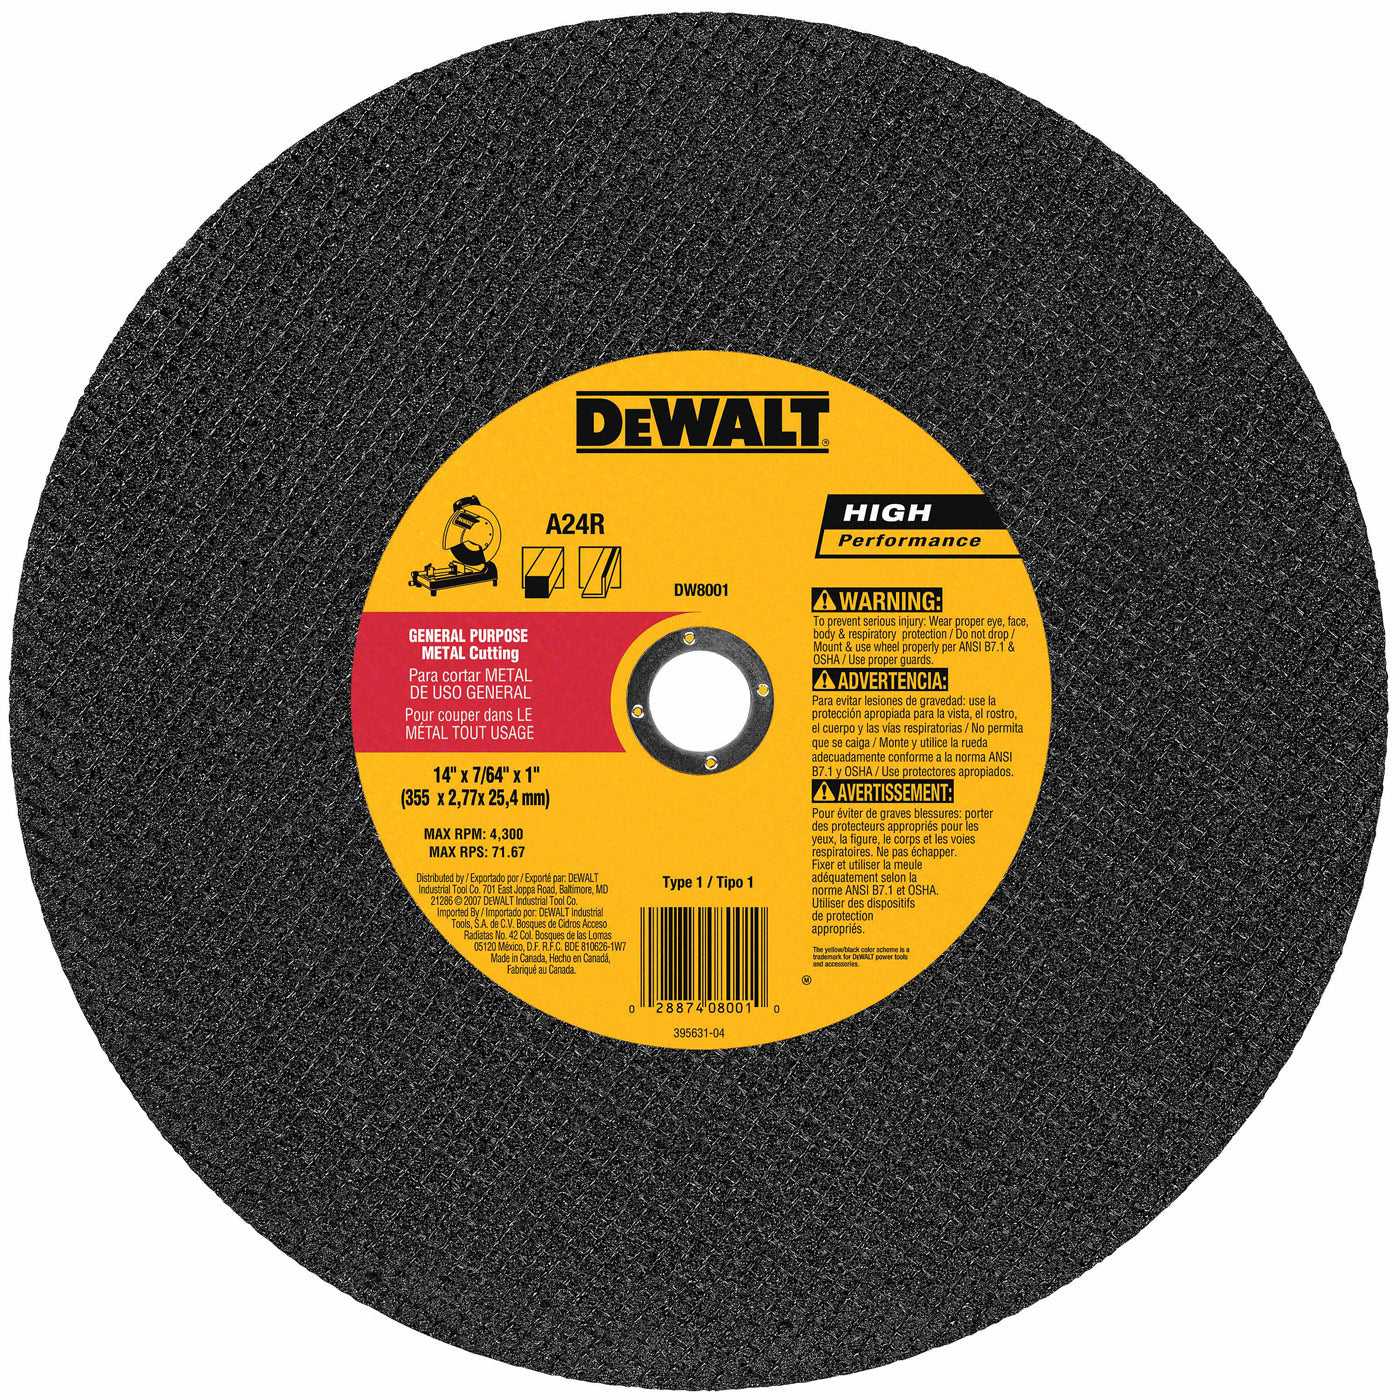 Dewalt, DeWalt DW8001 14" X 7/64" X 1" General Purpose Chop Saw Wheel